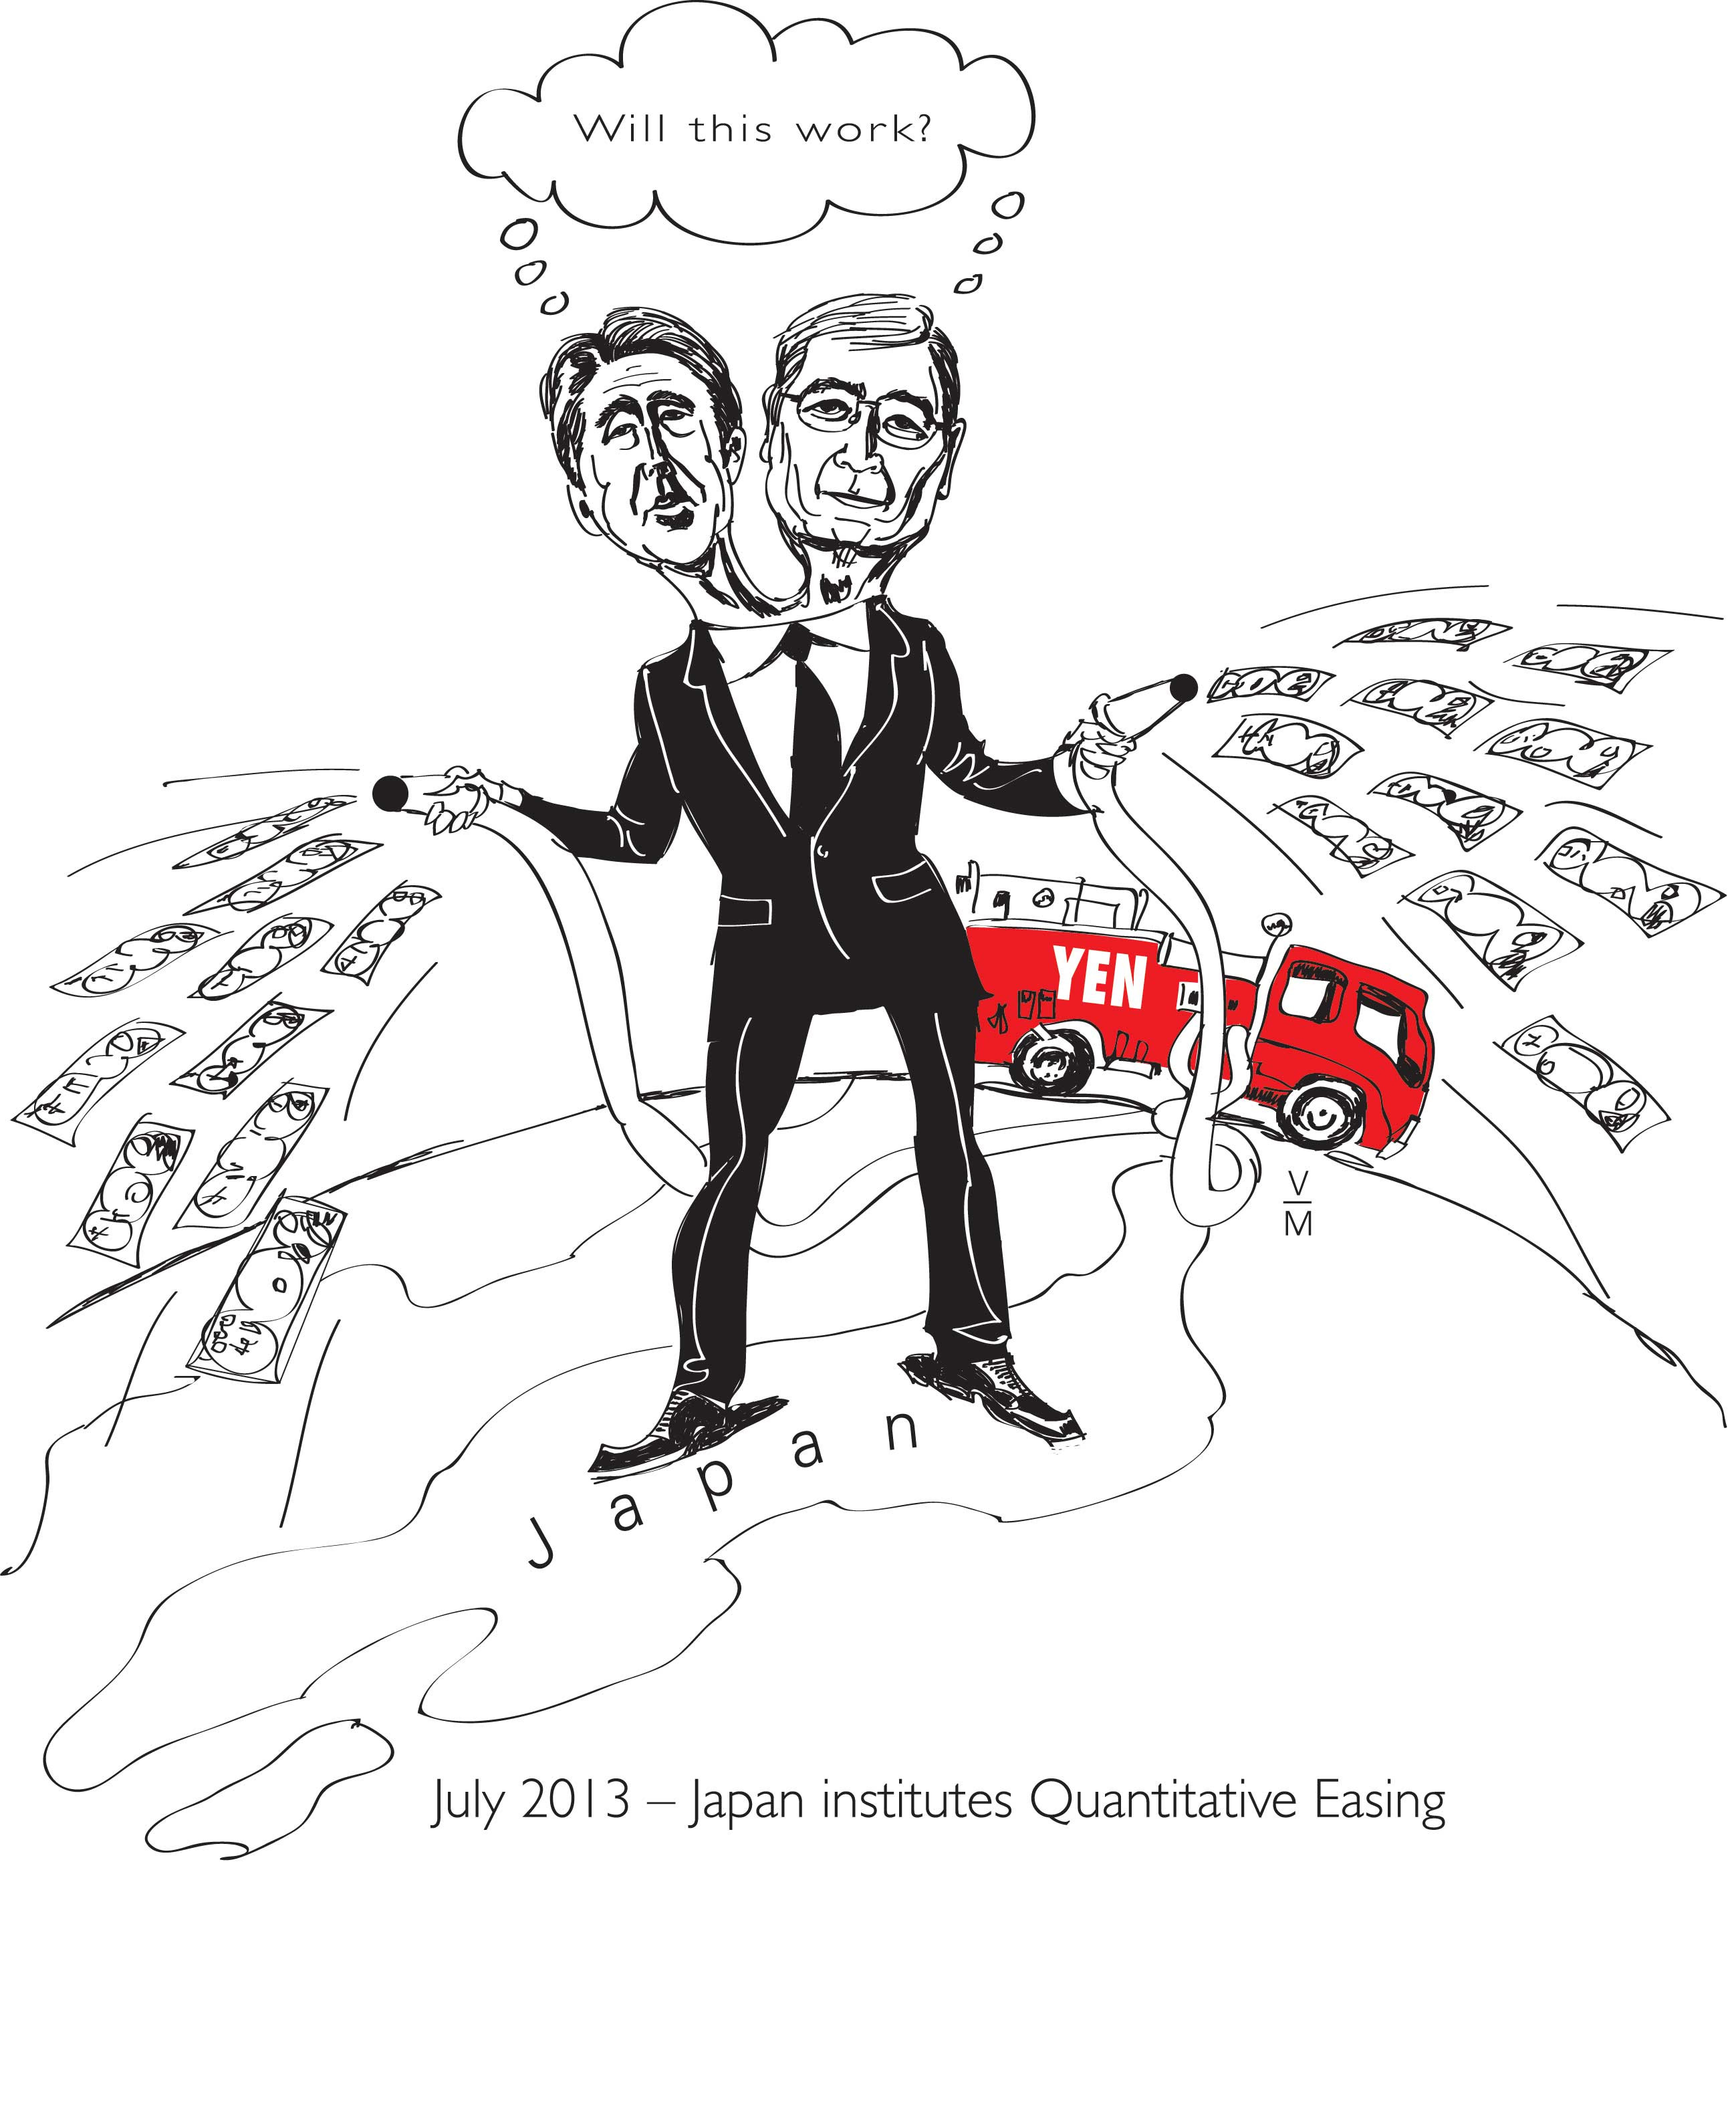 Japan institutes Quantitative Easing